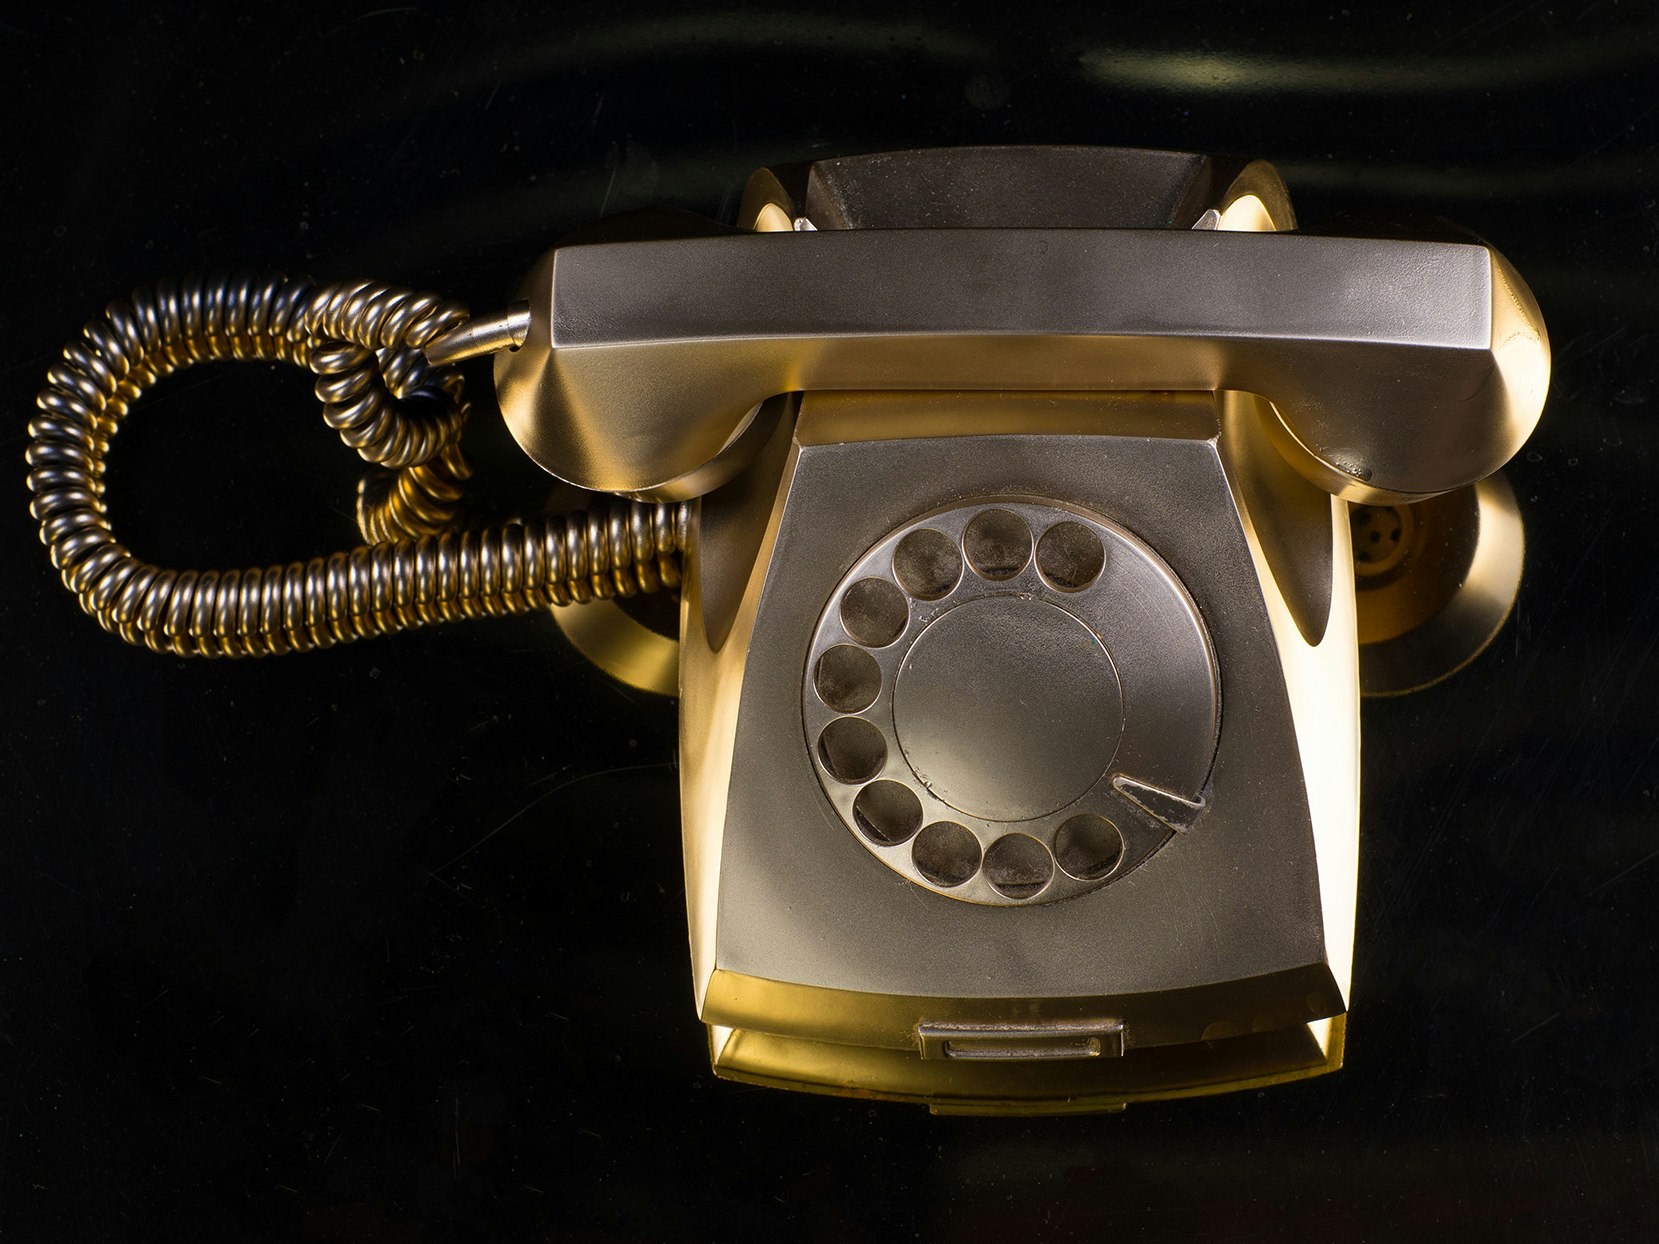 Gullfarget gammel telefon med svart bakgrunn